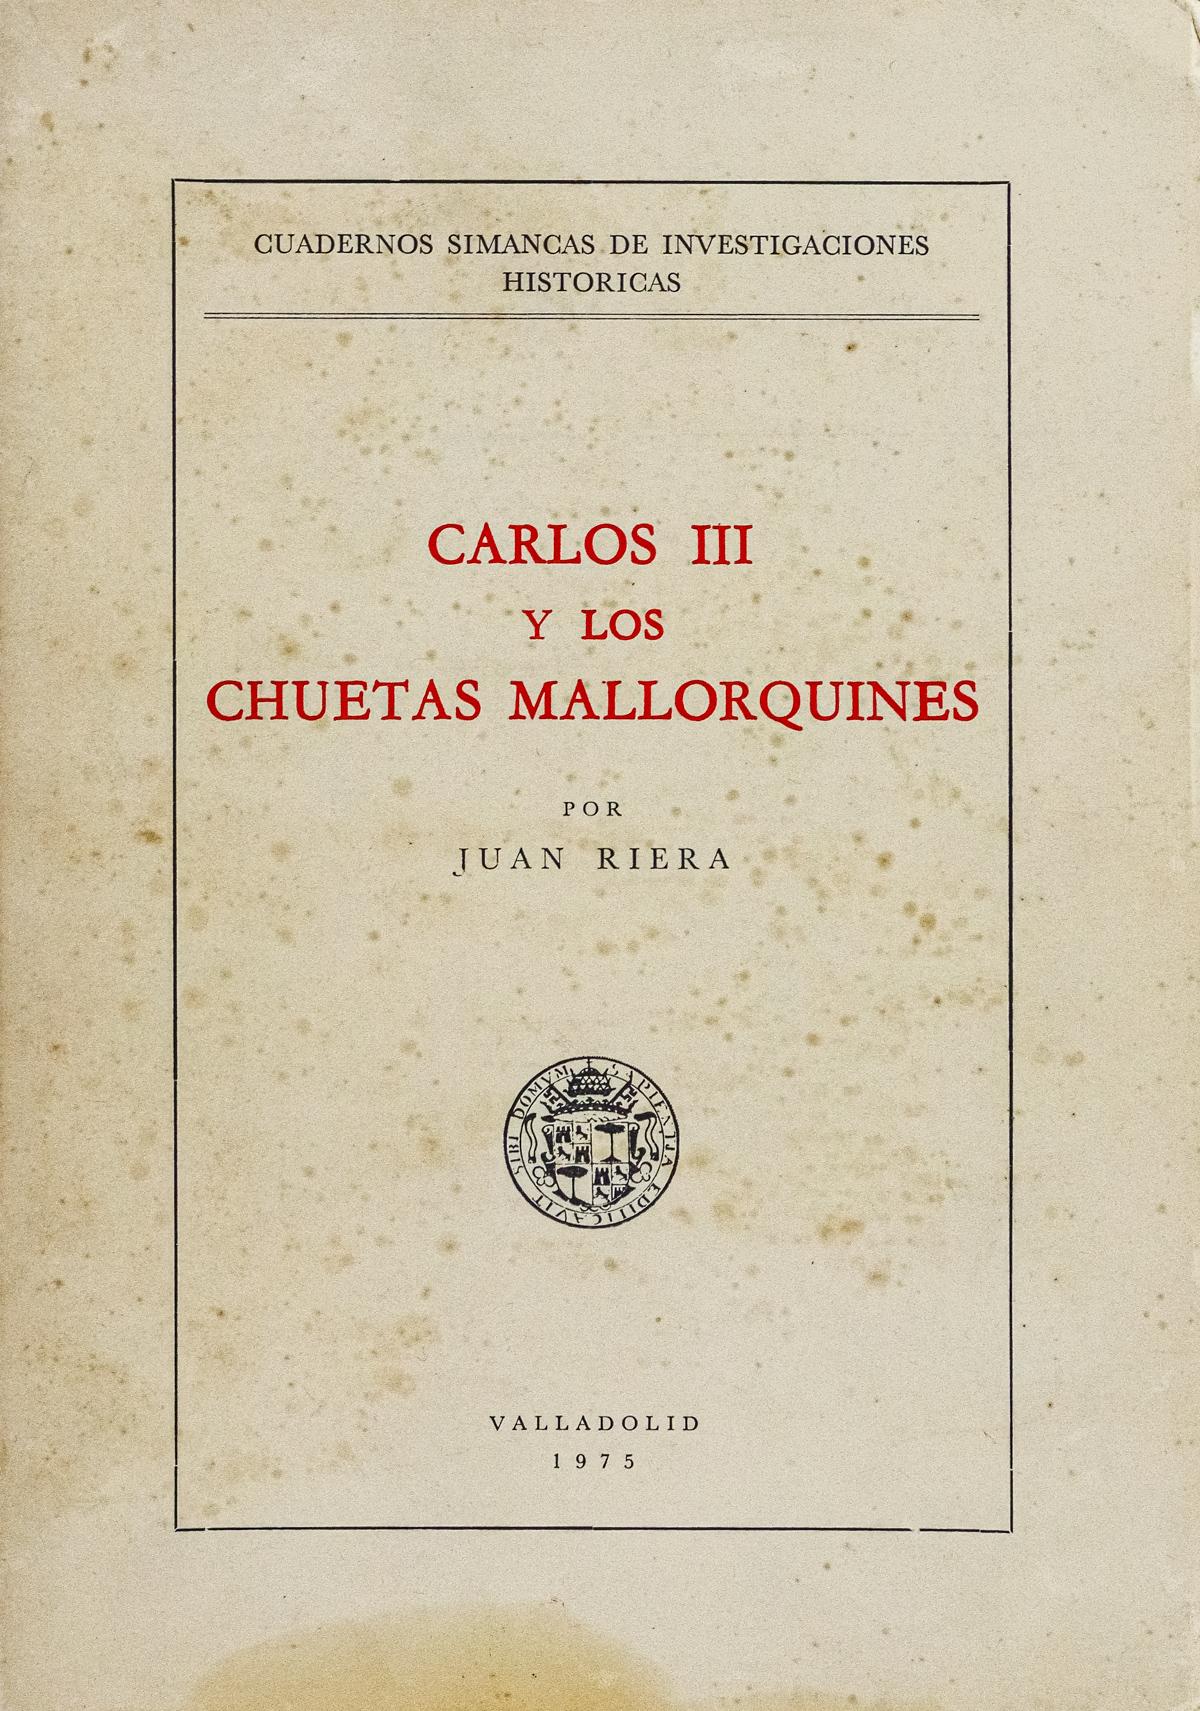 "CARLOS III Y LOS CHETAS MALLORQUINES"